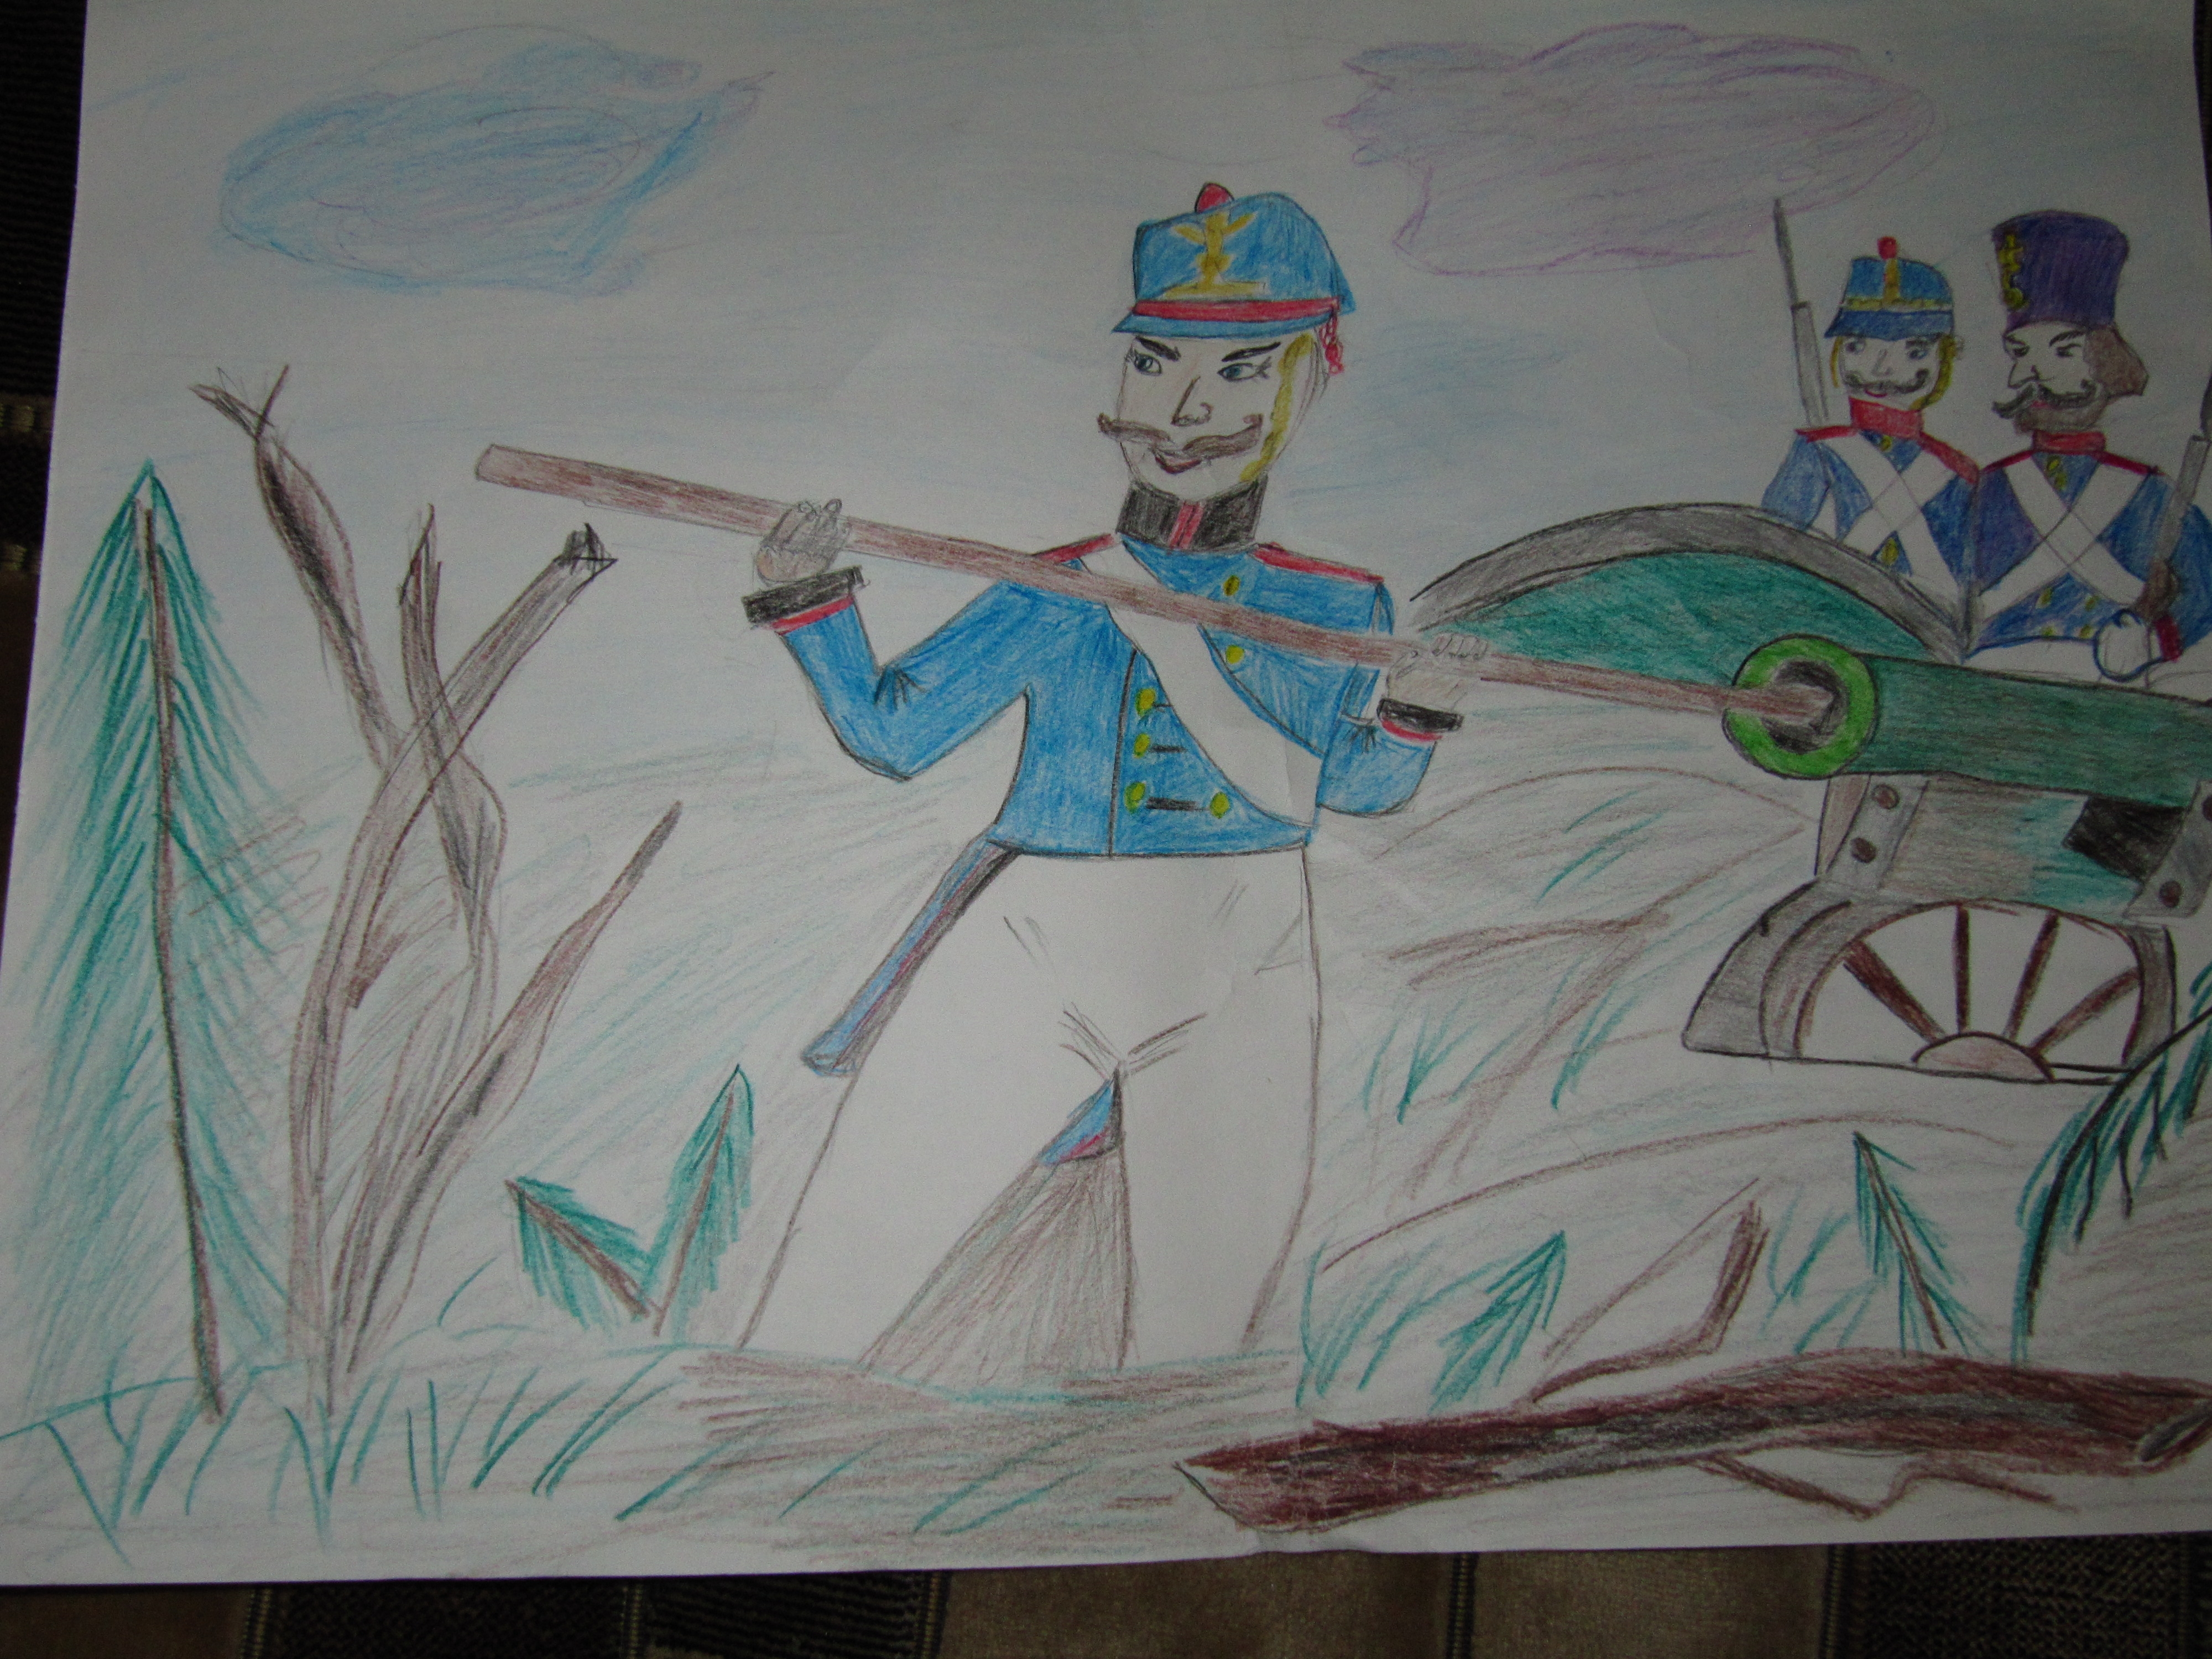 Бородинское сражение. Отечественная война 1812 года